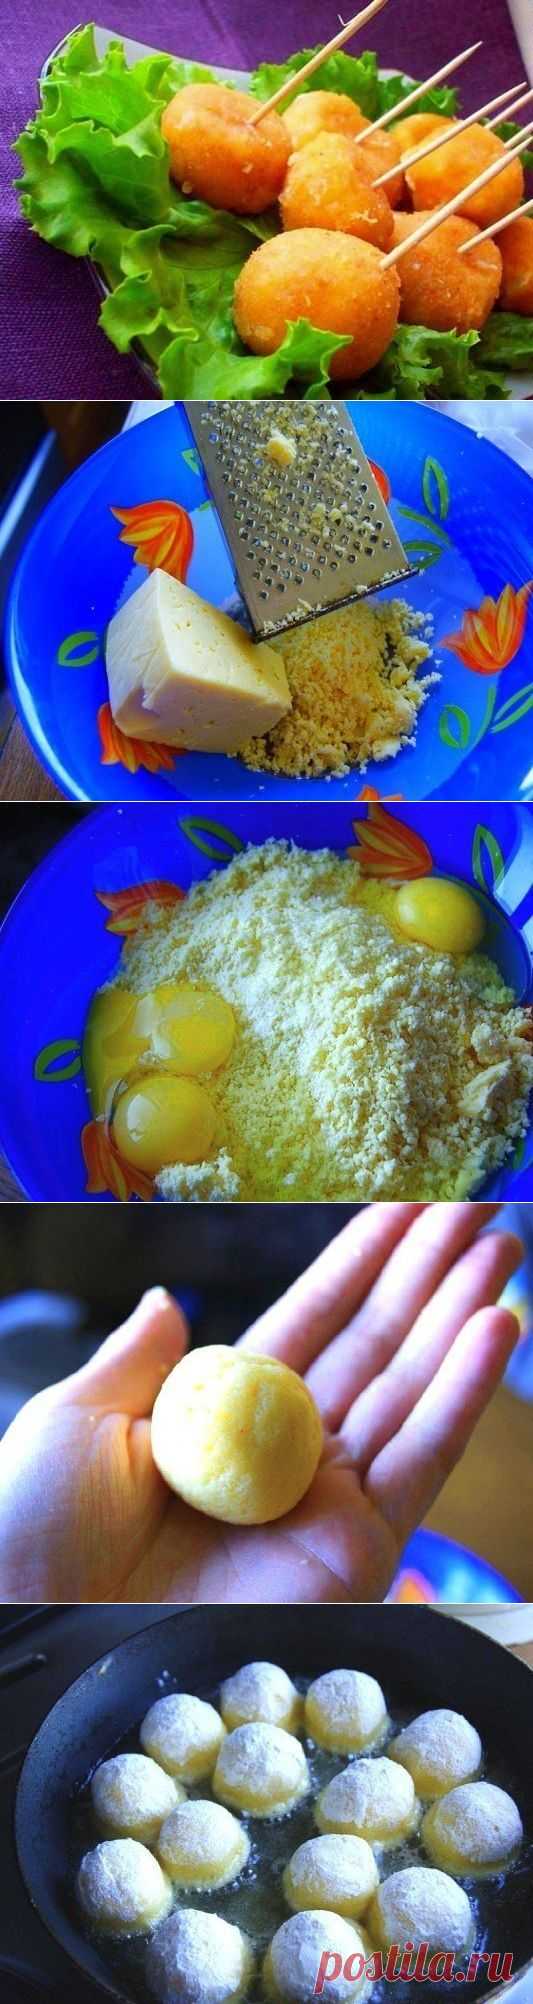 Как приготовить сырные шарики жареные с чесноком - рецепт, ингридиенты и фотографии